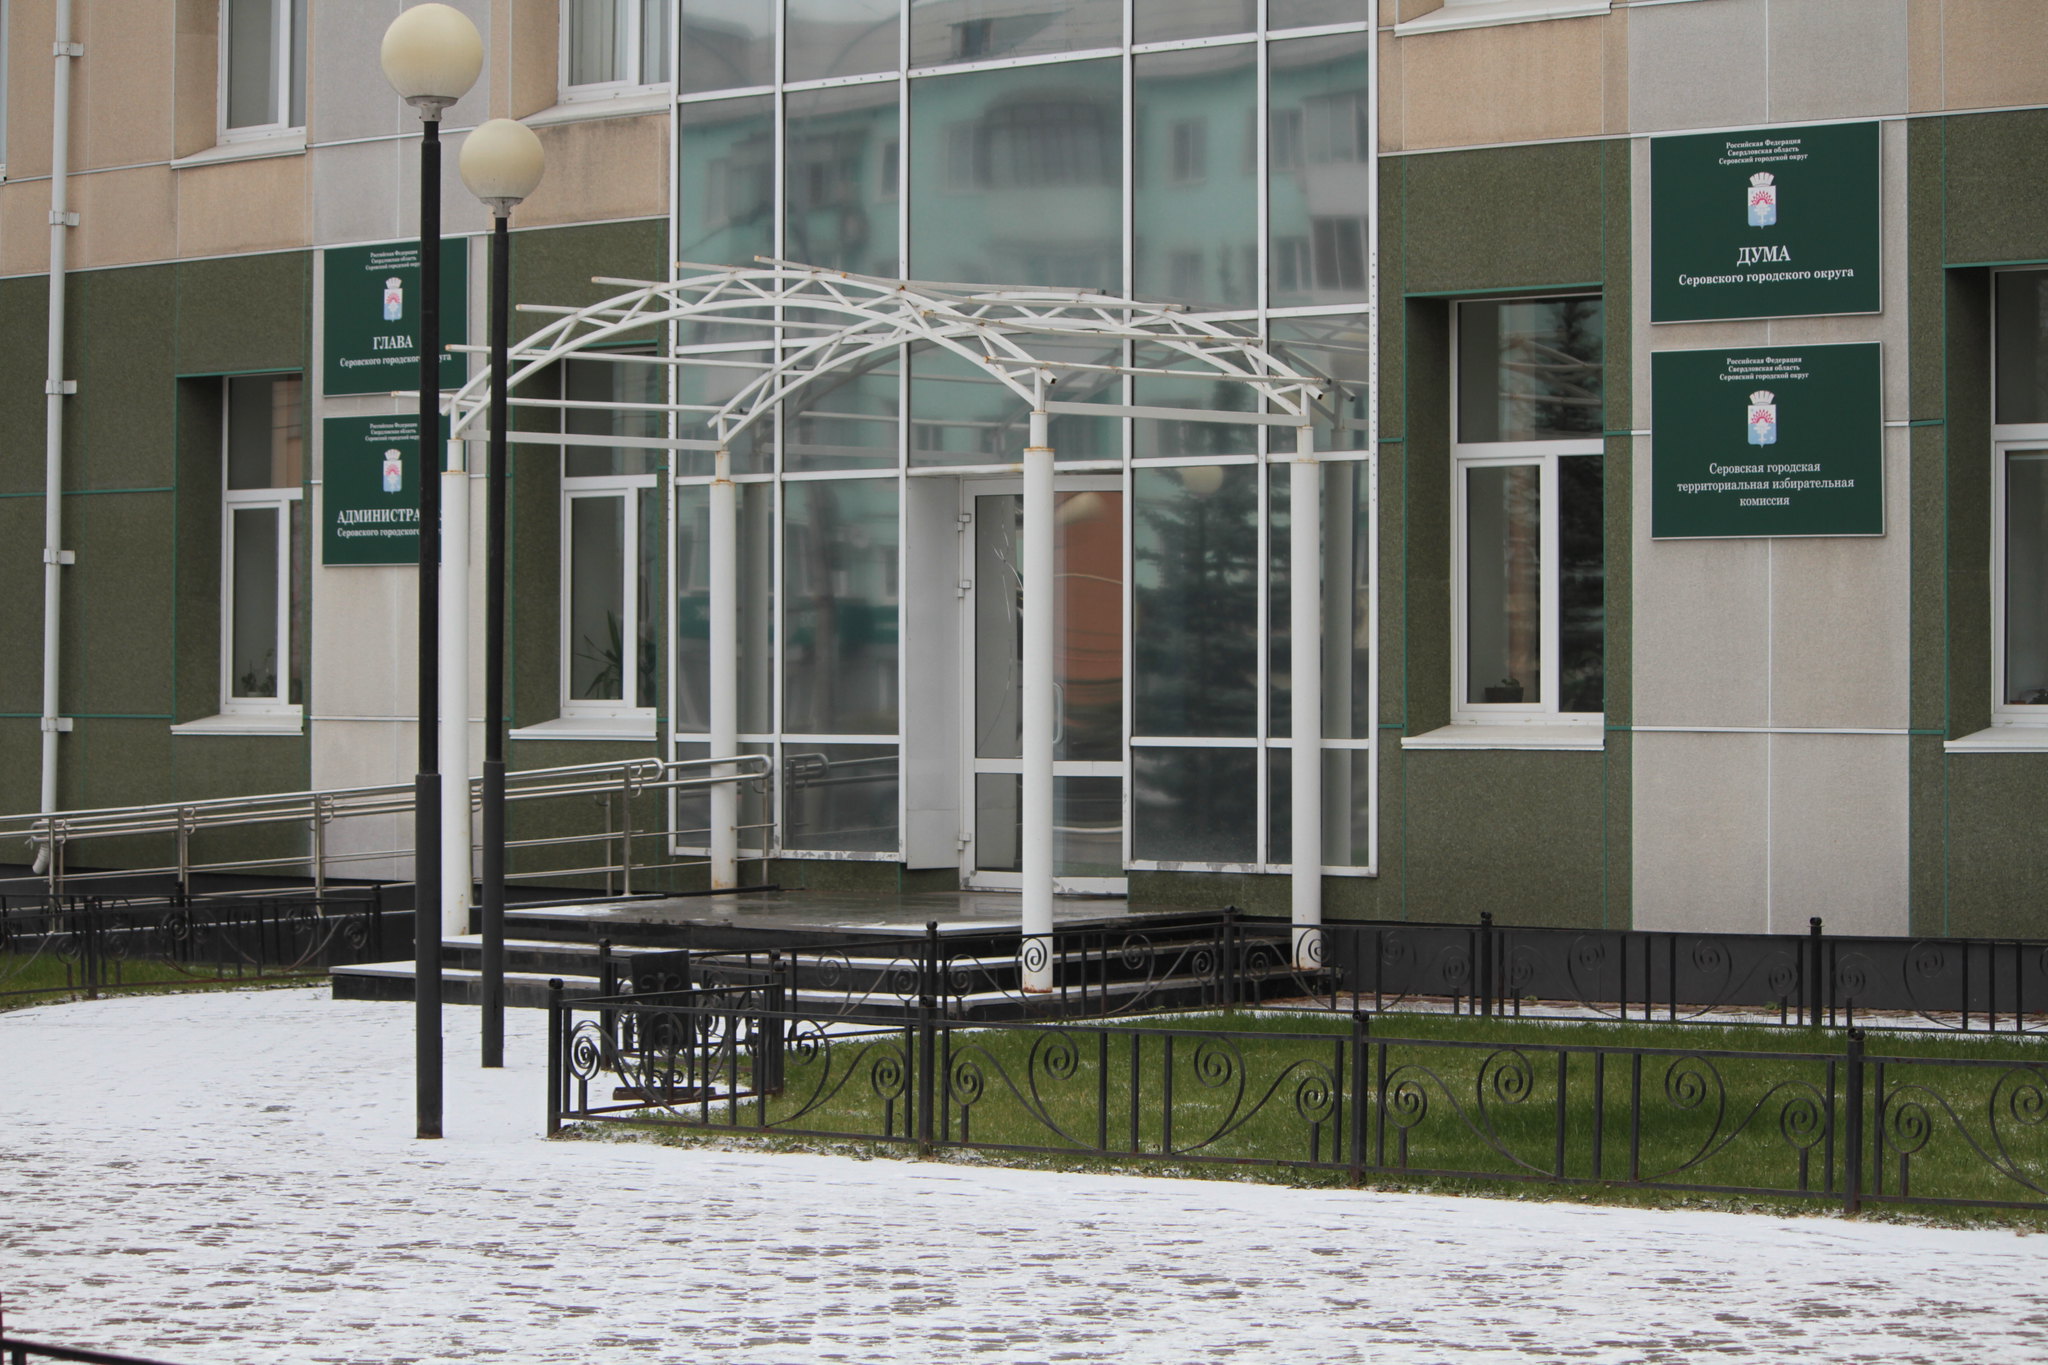 Общественная палата Серова планирует закрыть вход на заседание